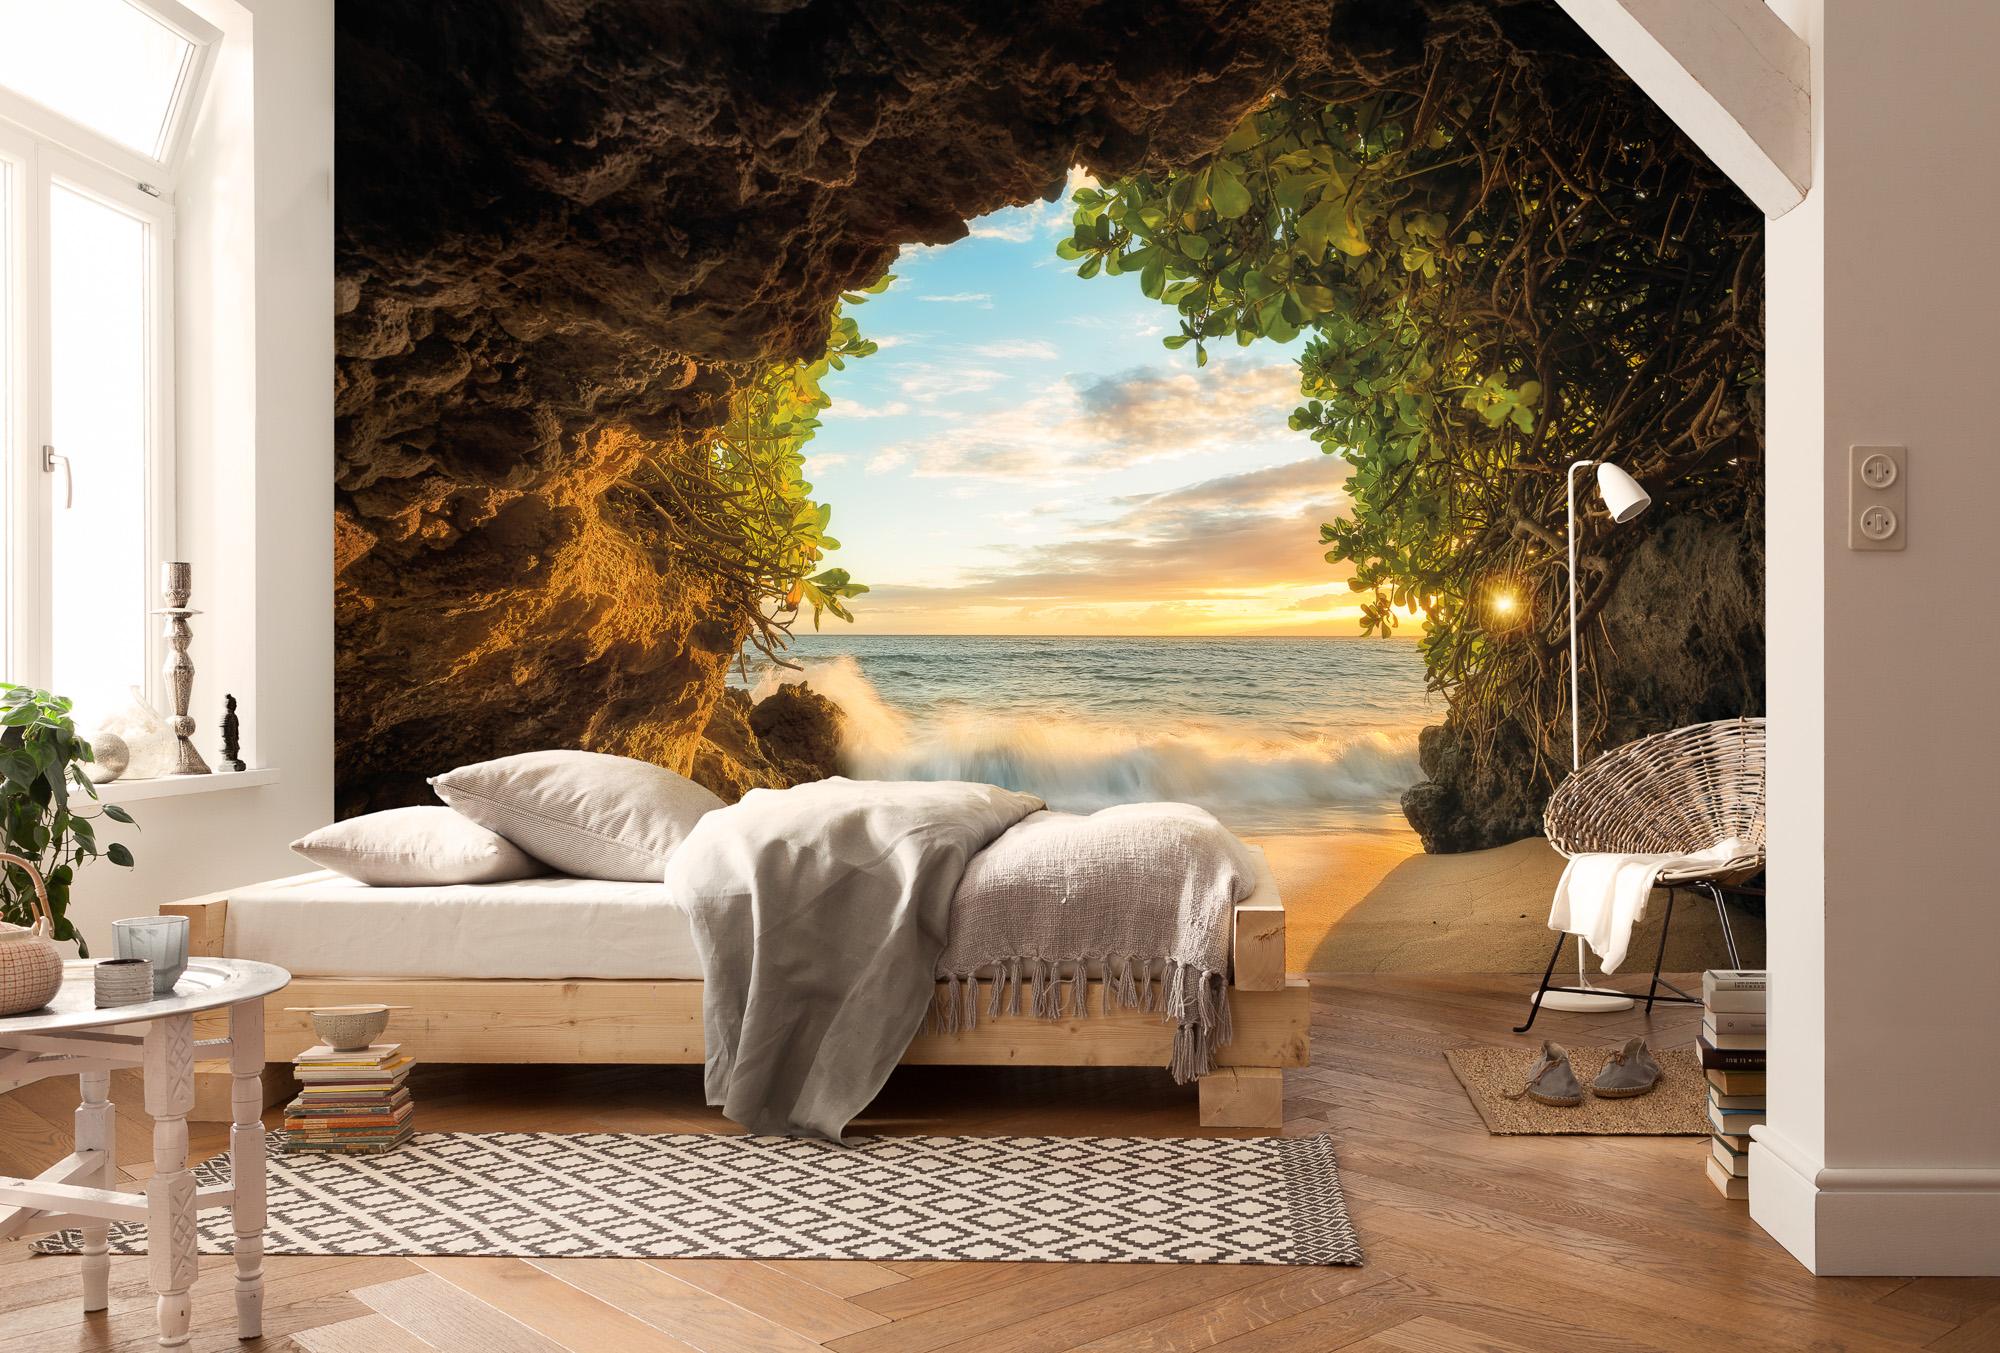 Schlafzimmer-Wandgestaltung: Lass dich inspirieren!